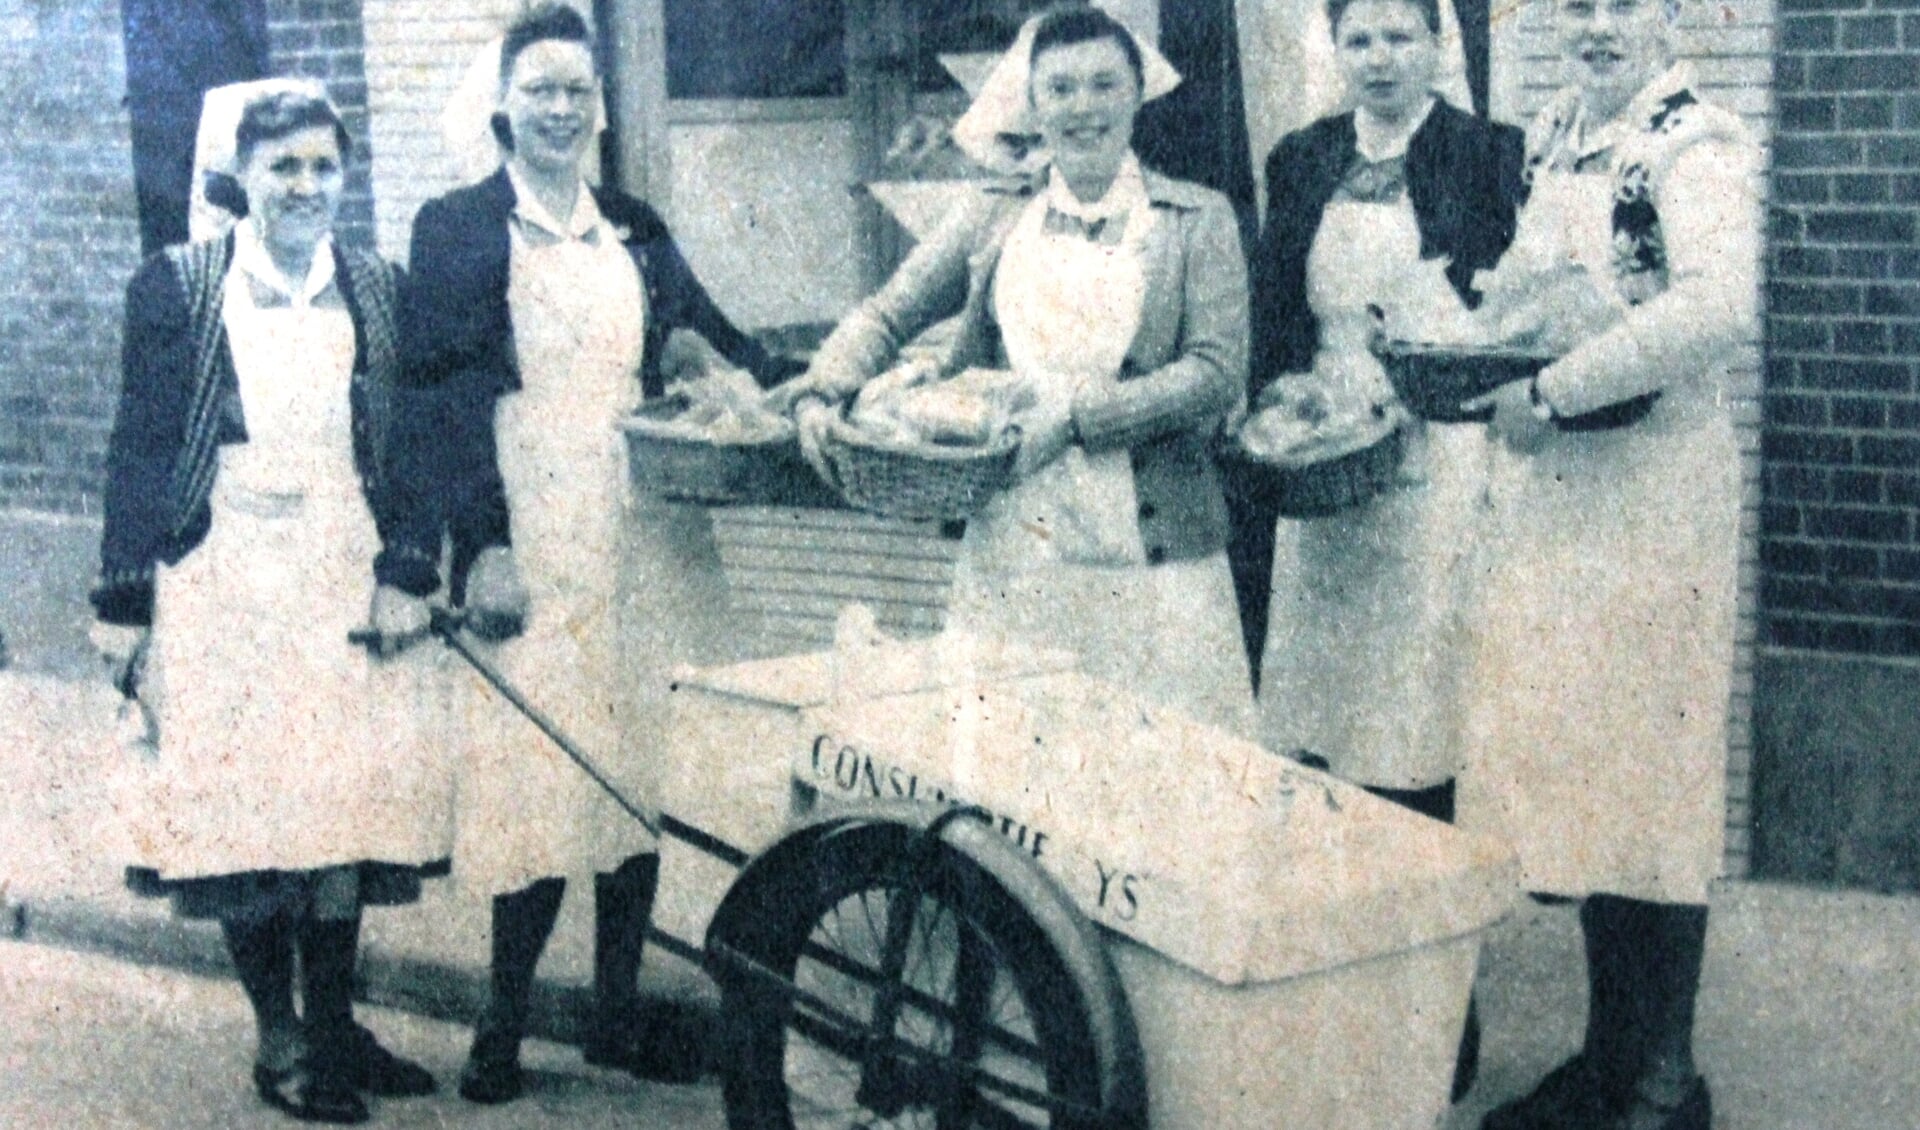 Aalten kraamverzorgsters van het kraamcentrum, april 1950. Foto: De Achterhoek